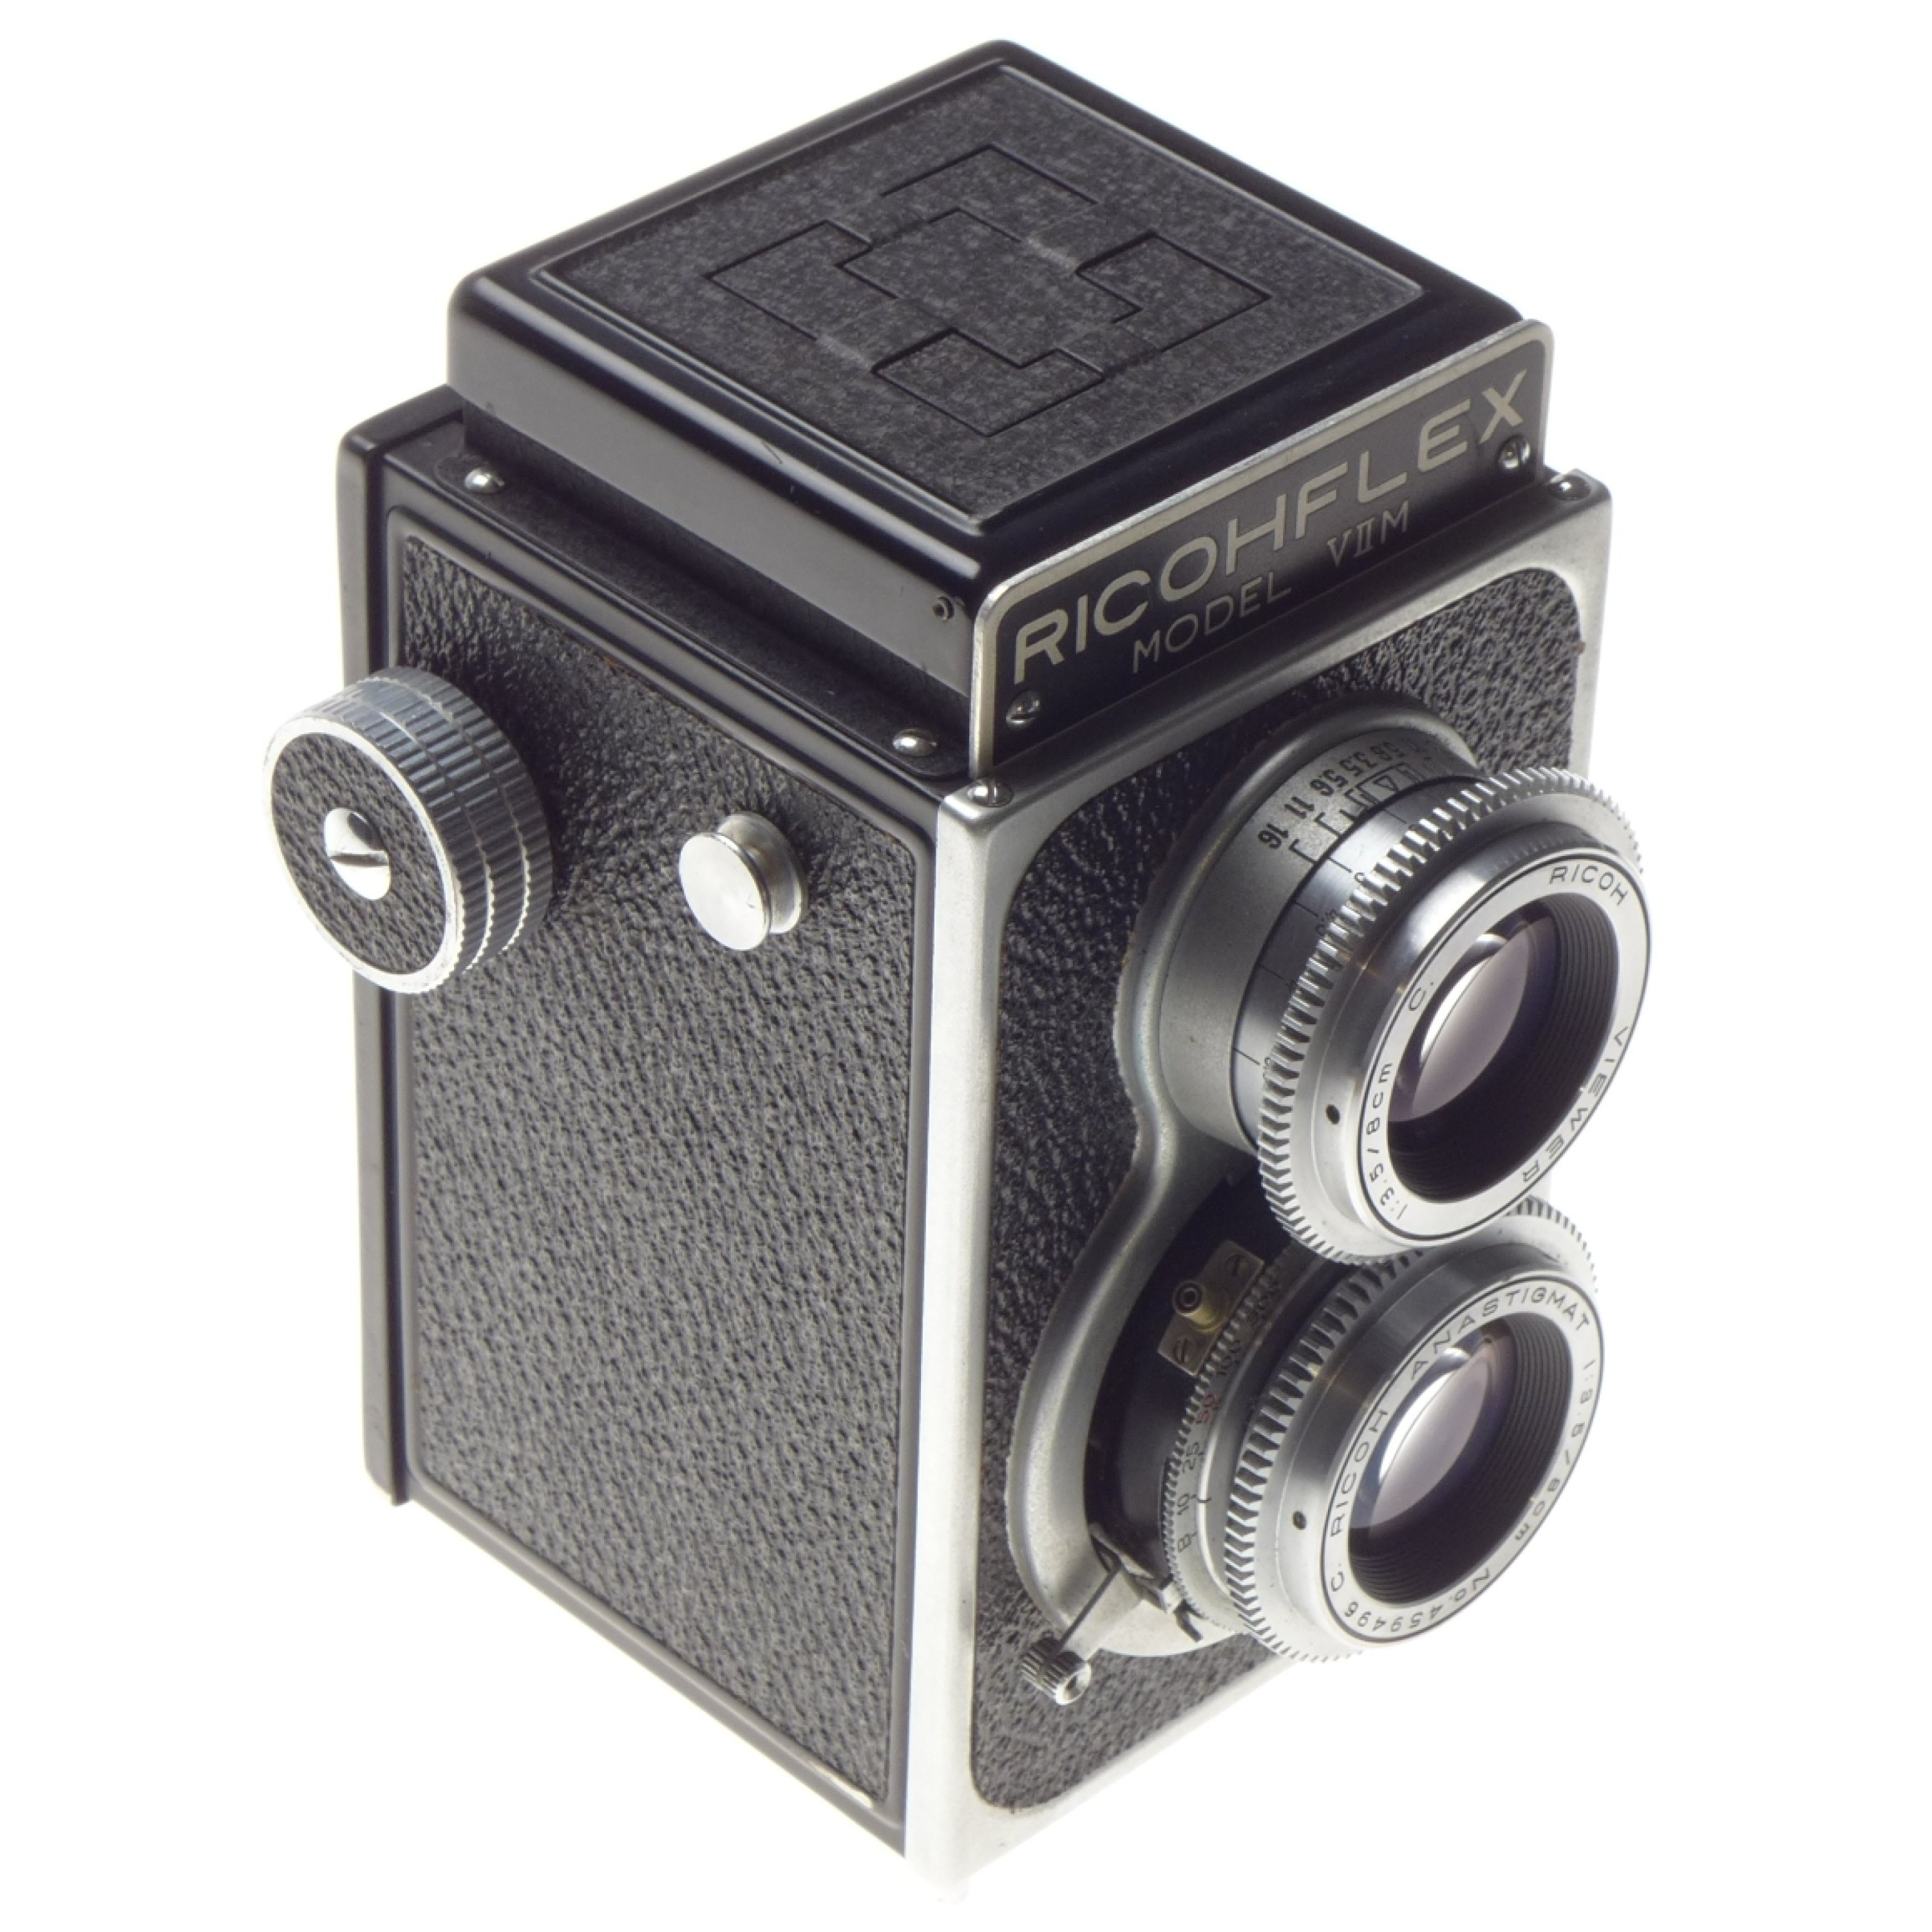 整備済み】Ricoh Ricohflex Model VII 二眼レフカメラ - フィルムカメラ